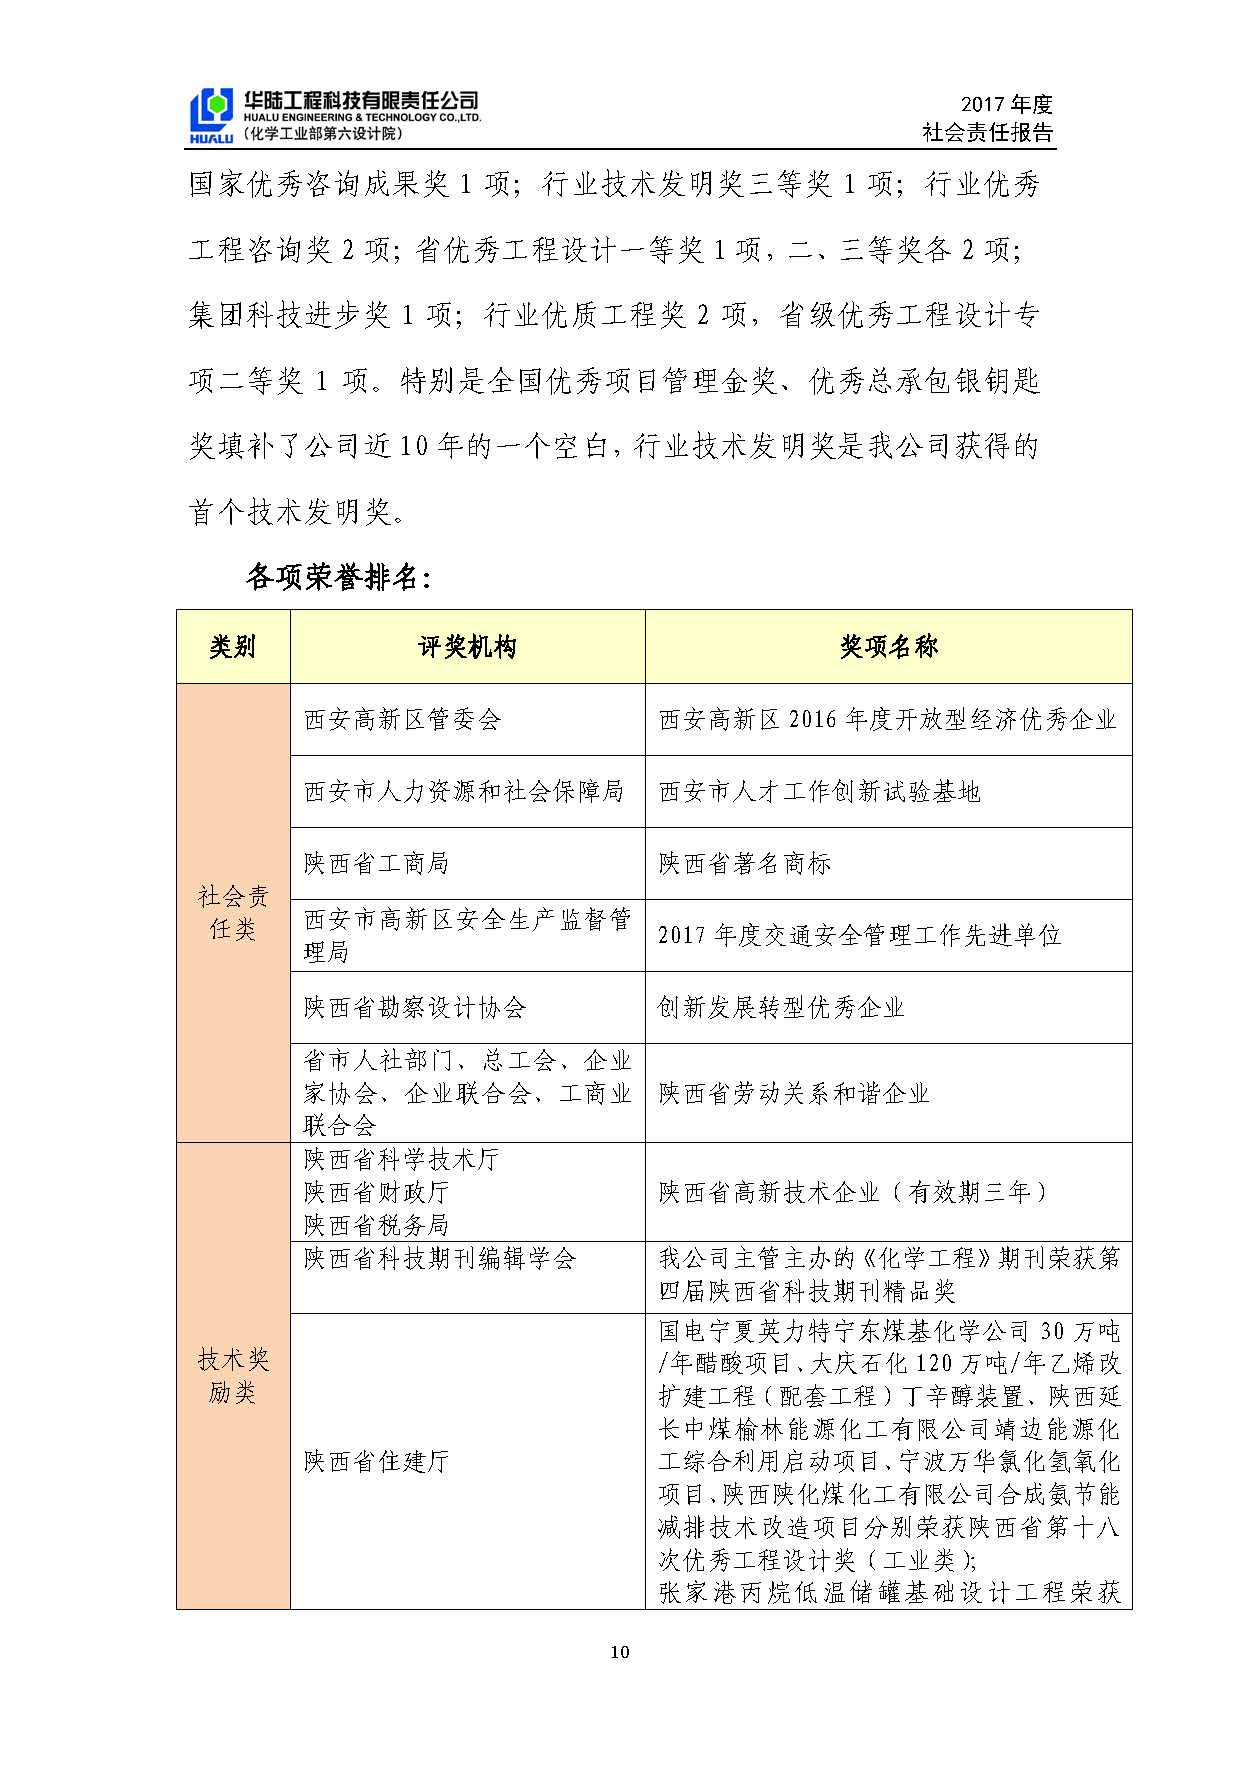 华陆工程科技有限责任公司2017年社会责任报告_页面_11.jpg